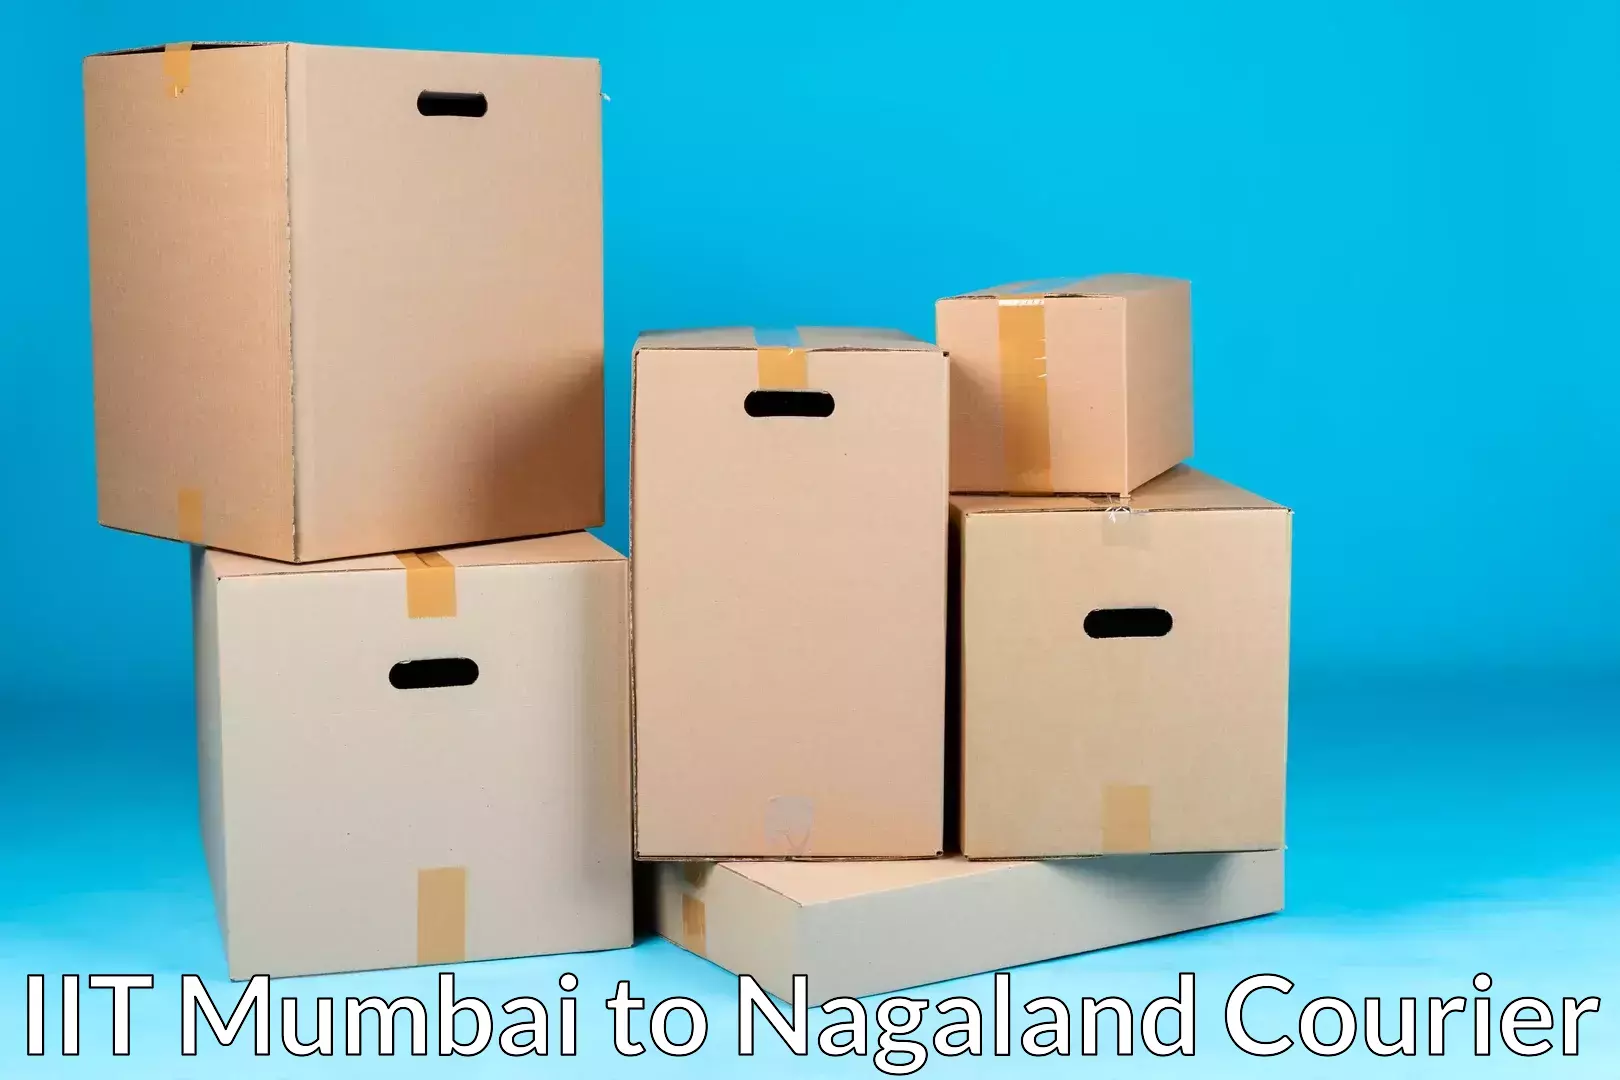 Moving and handling services IIT Mumbai to Nagaland